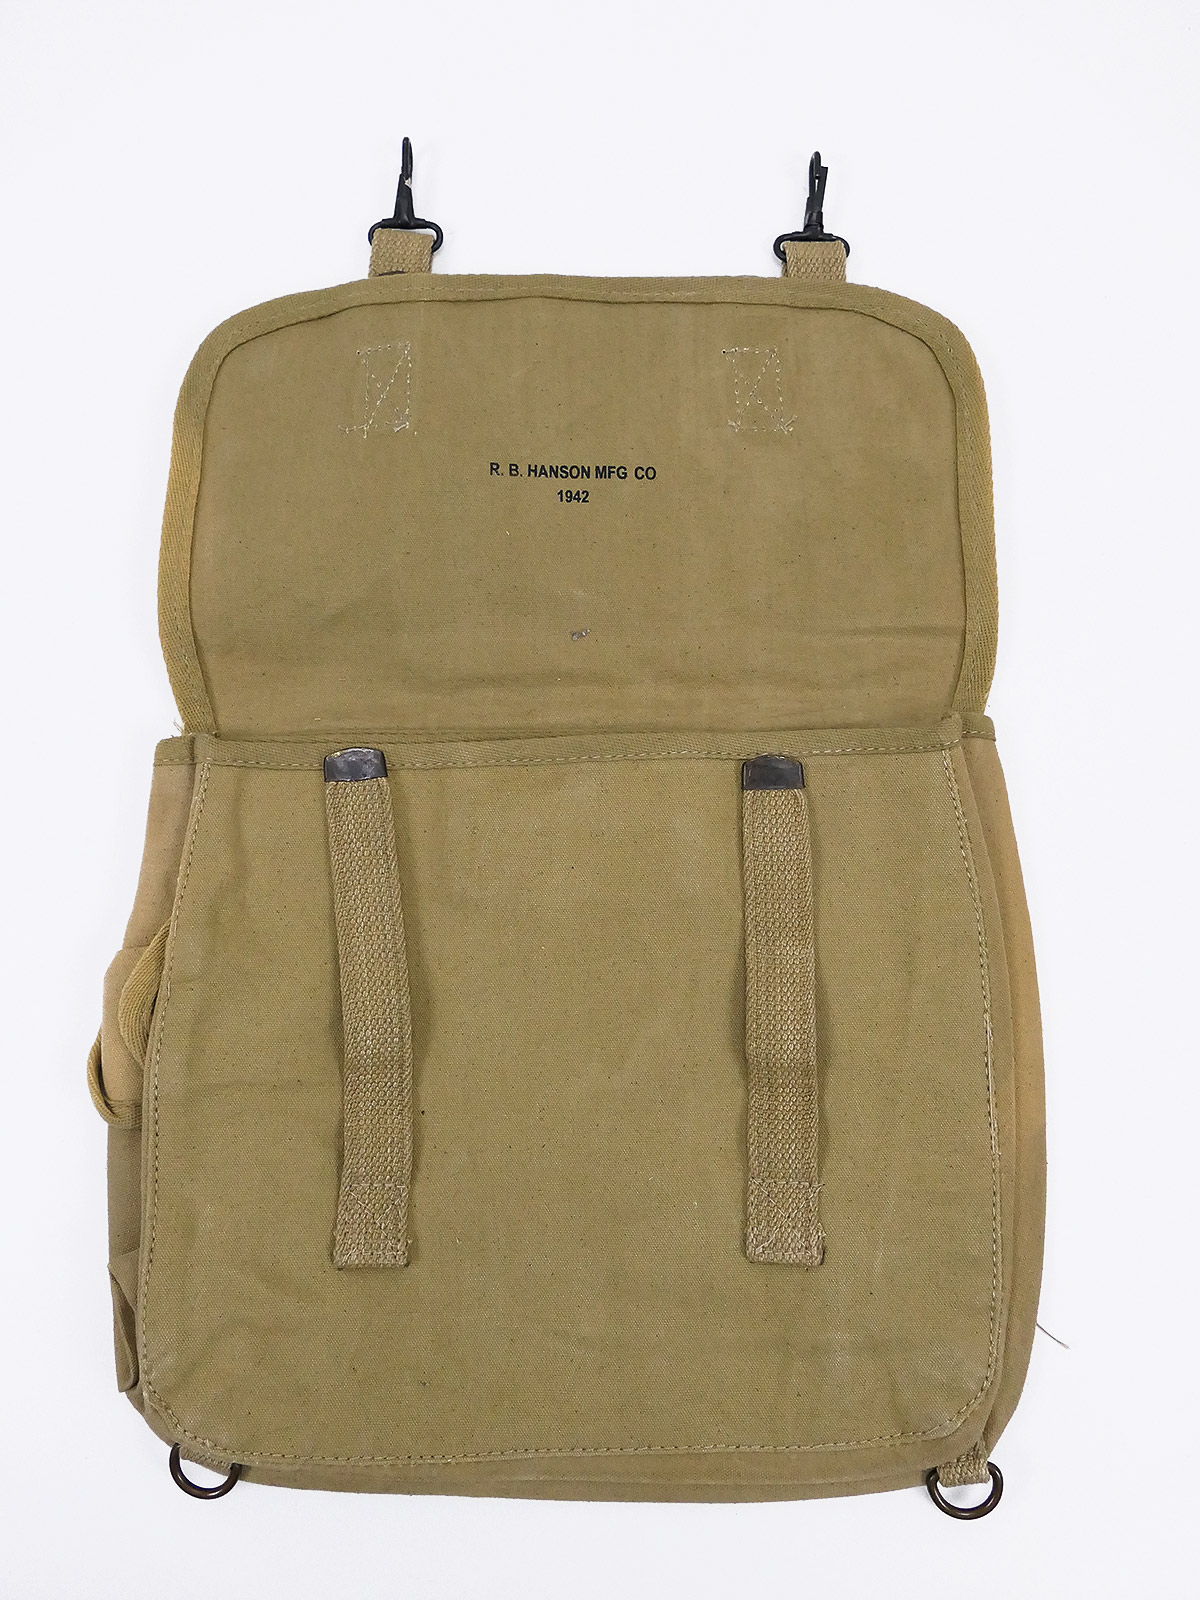 Original US Army M-1936 Musette Bag combat bag M36 - British Made 1944 